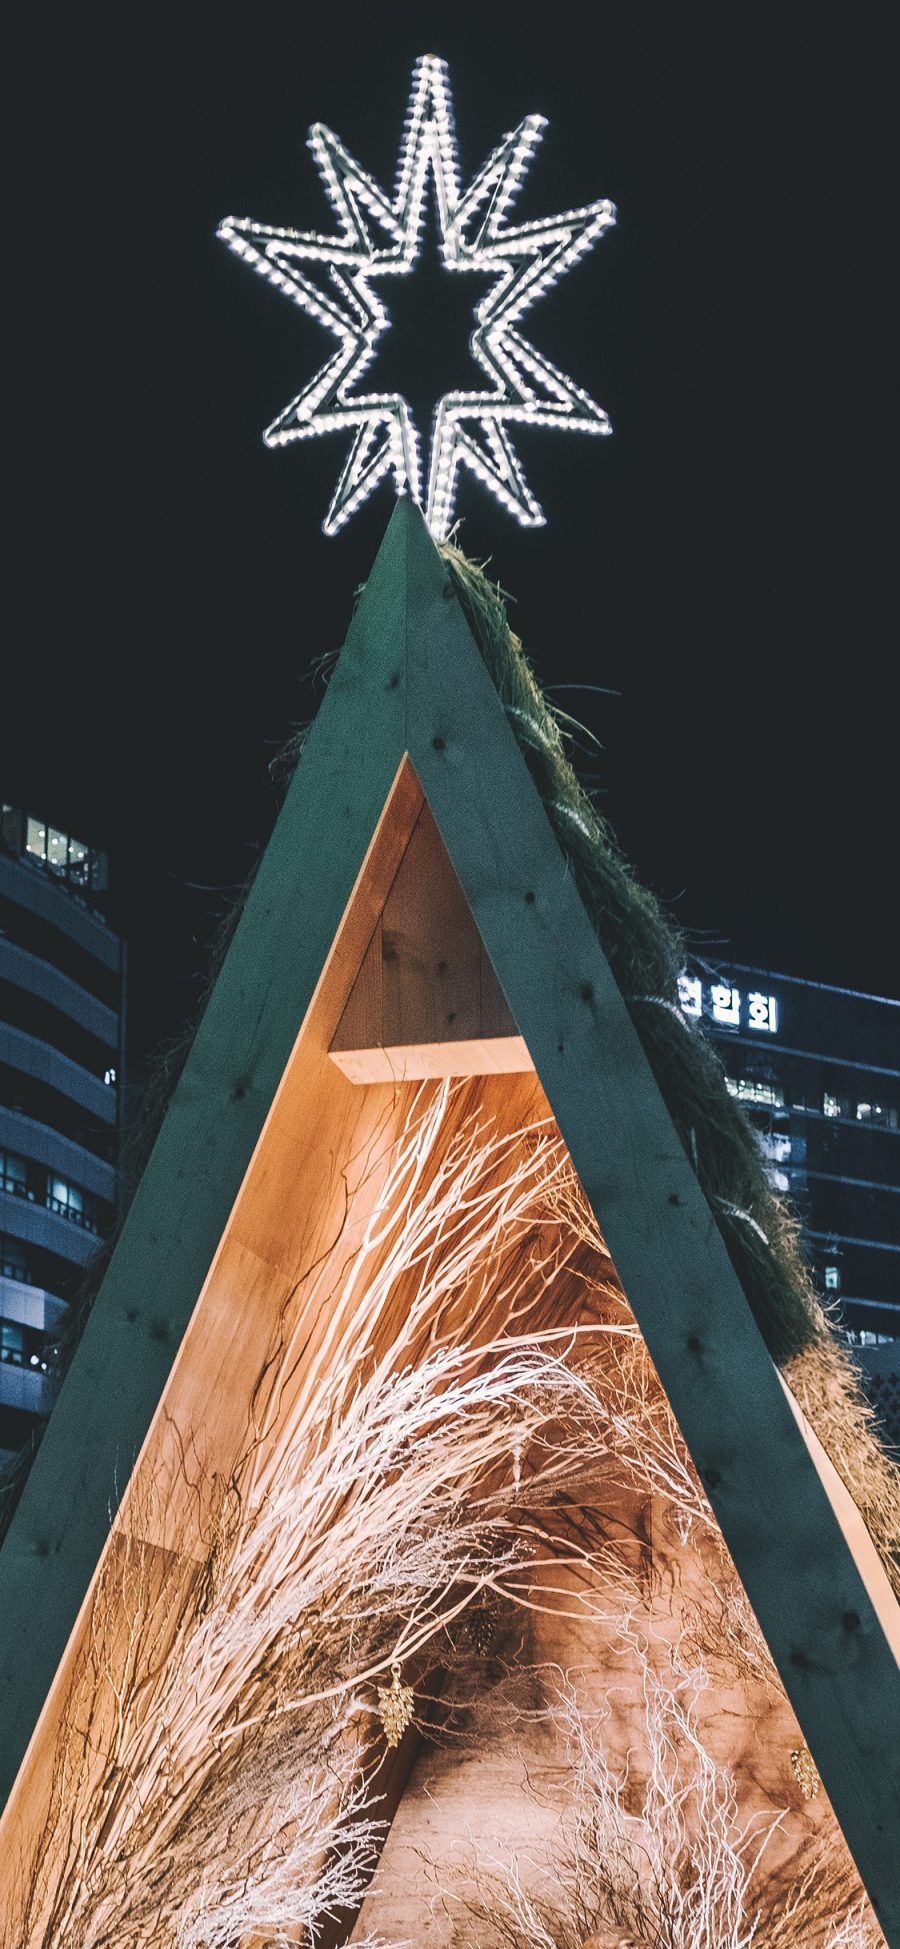 [2436×1125]建筑 三角 灯饰 夜景 苹果手机壁纸图片